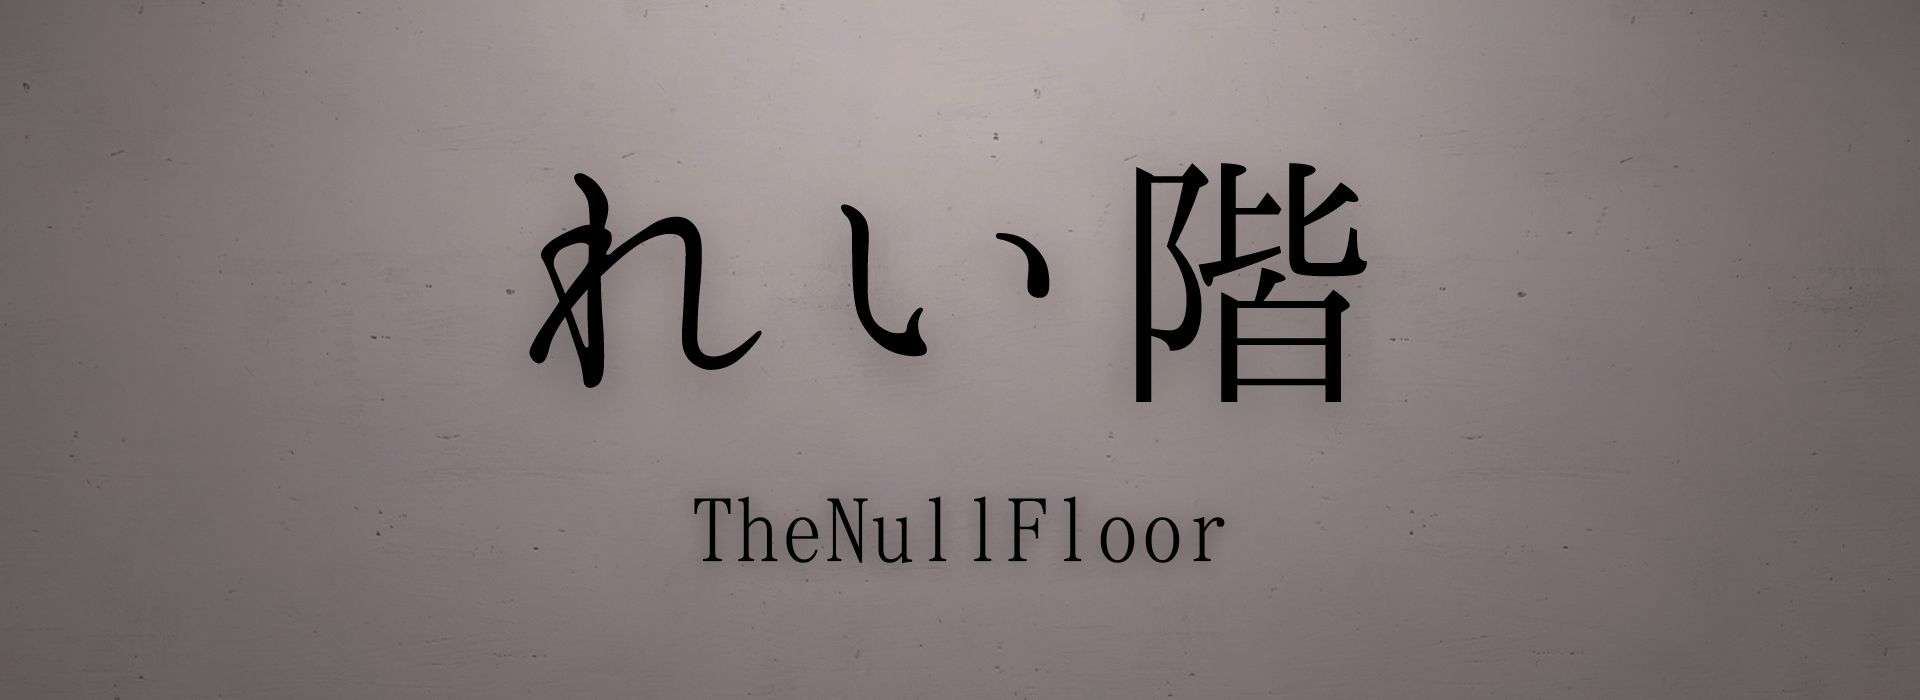 れい階 | The Null Floor